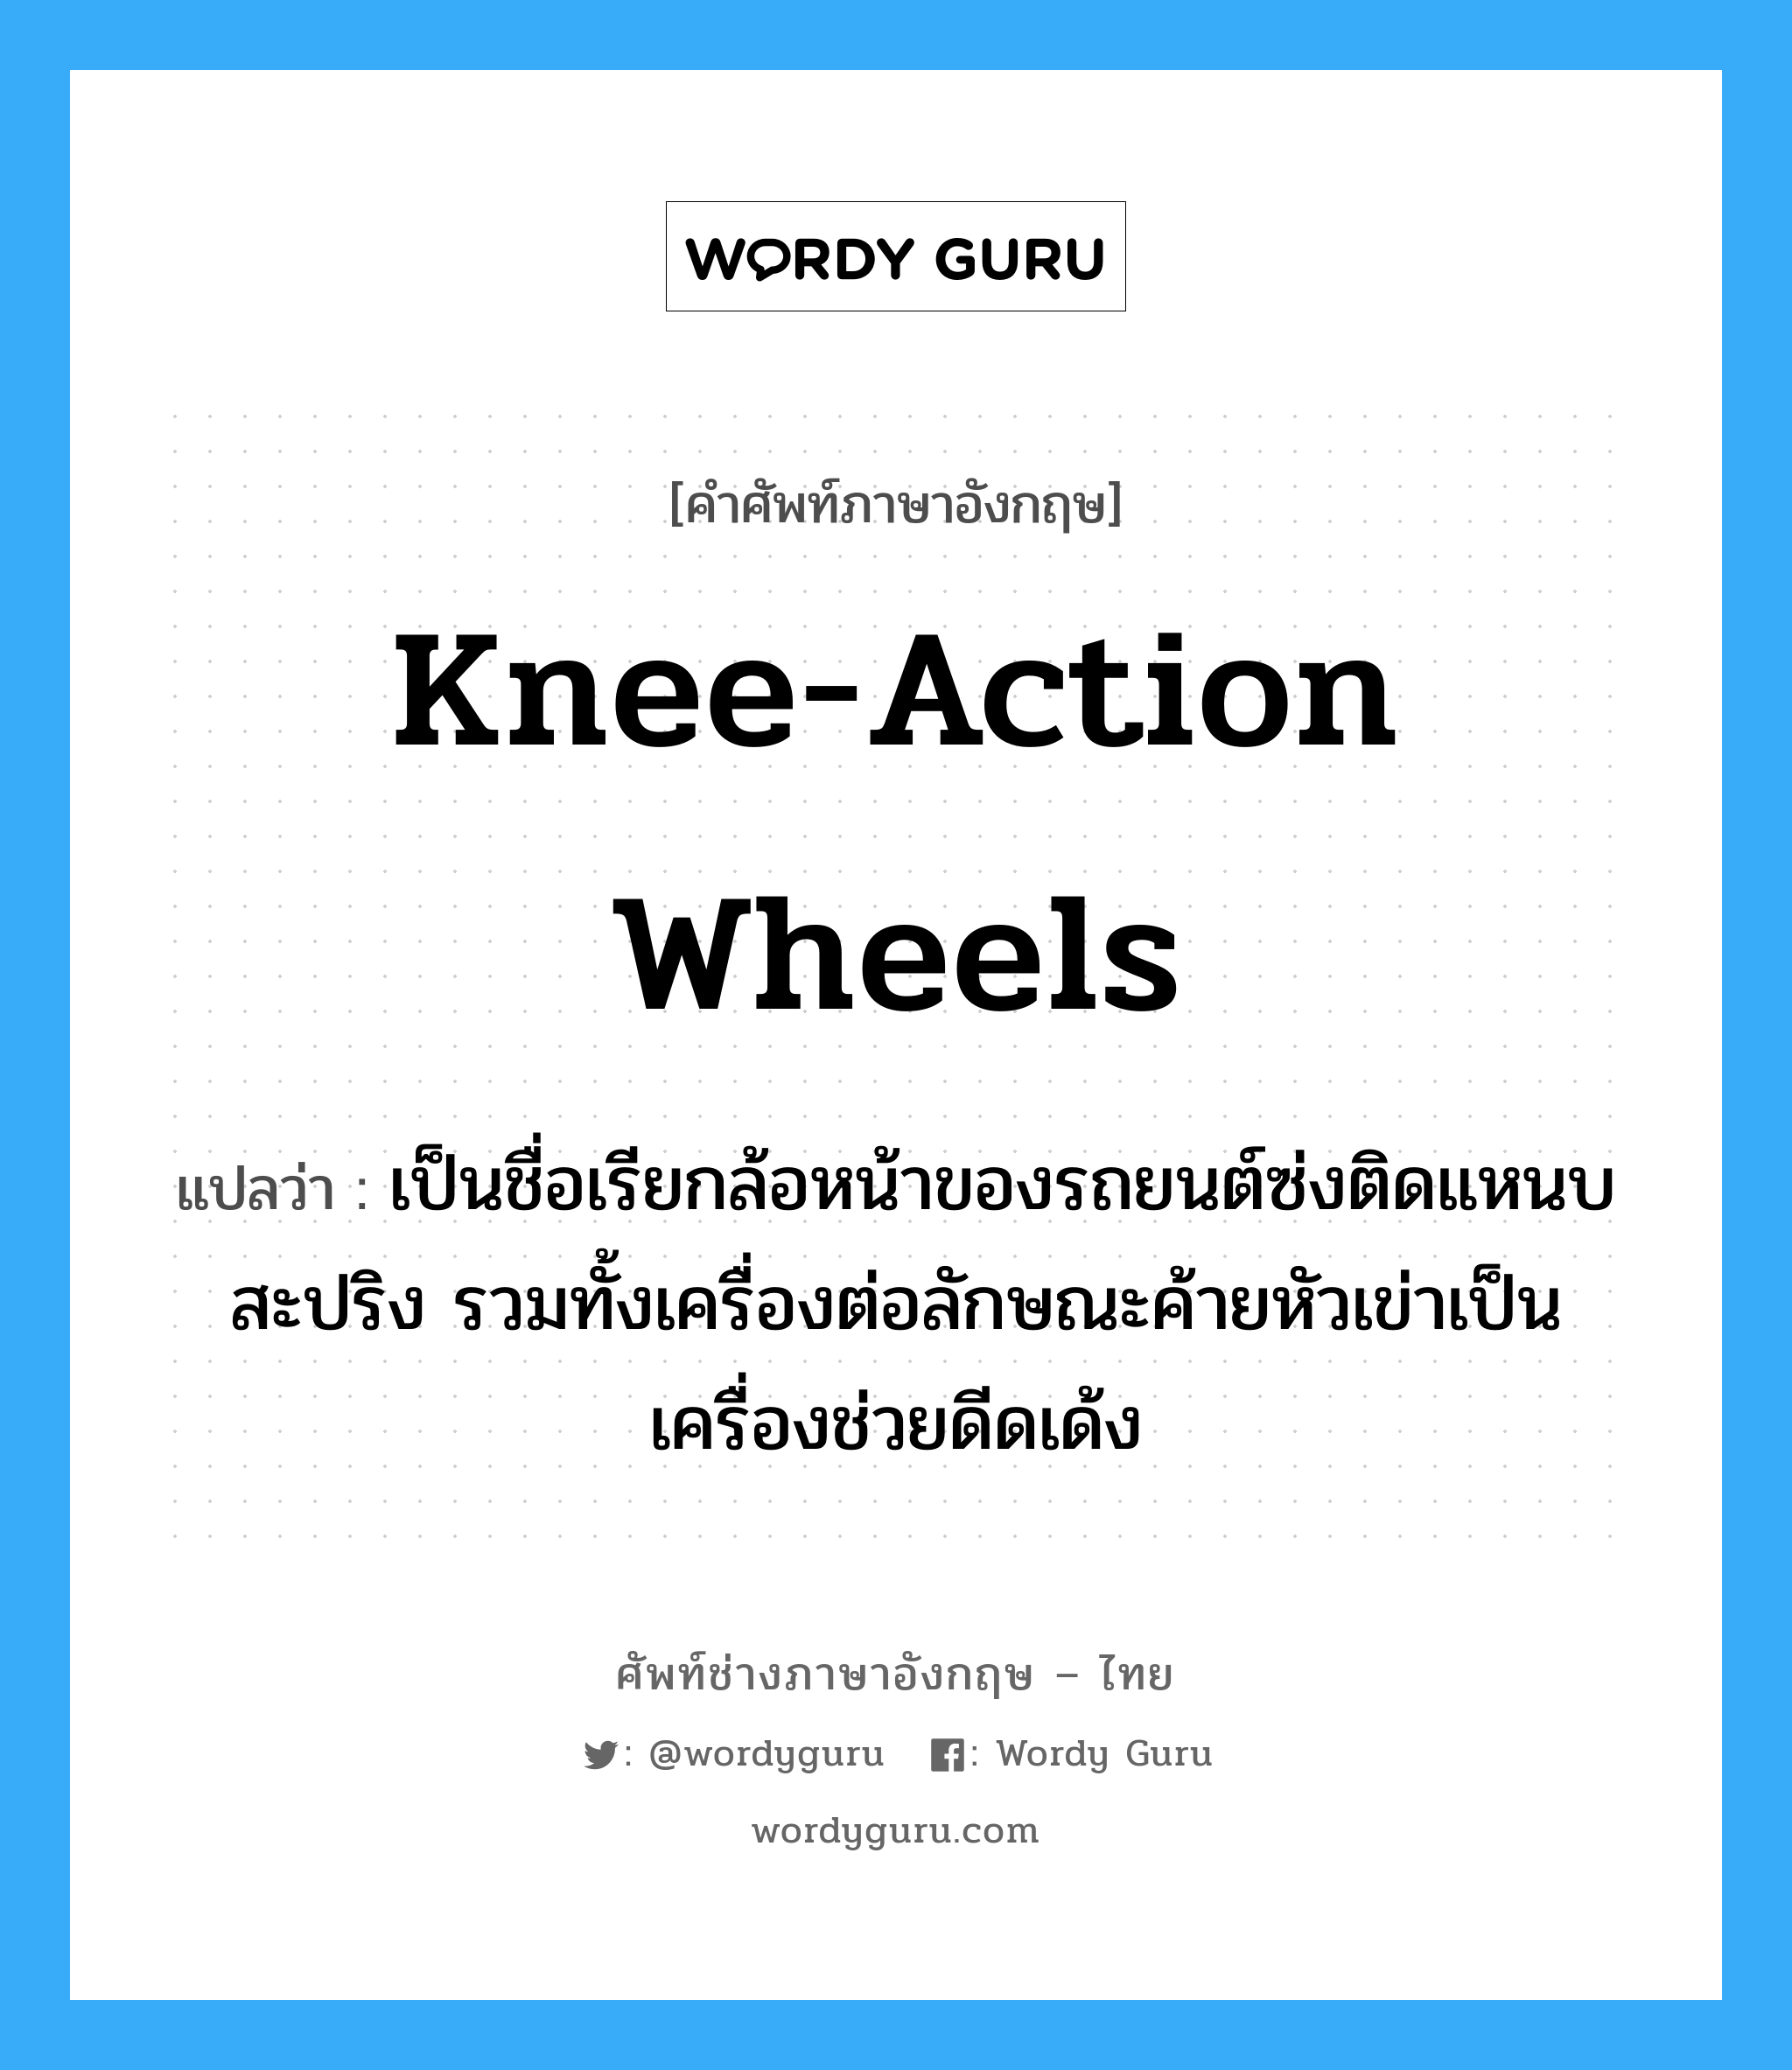 knee-action wheels แปลว่า?, คำศัพท์ช่างภาษาอังกฤษ - ไทย knee-action wheels คำศัพท์ภาษาอังกฤษ knee-action wheels แปลว่า เป็นชื่อเรียกล้อหน้าของรถยนต์ซ่งติดแหนบสะปริง รวมทั้งเครื่องต่อลักษณะค้ายหัวเข่าเป็นเครื่องช่วยดีดเด้ง